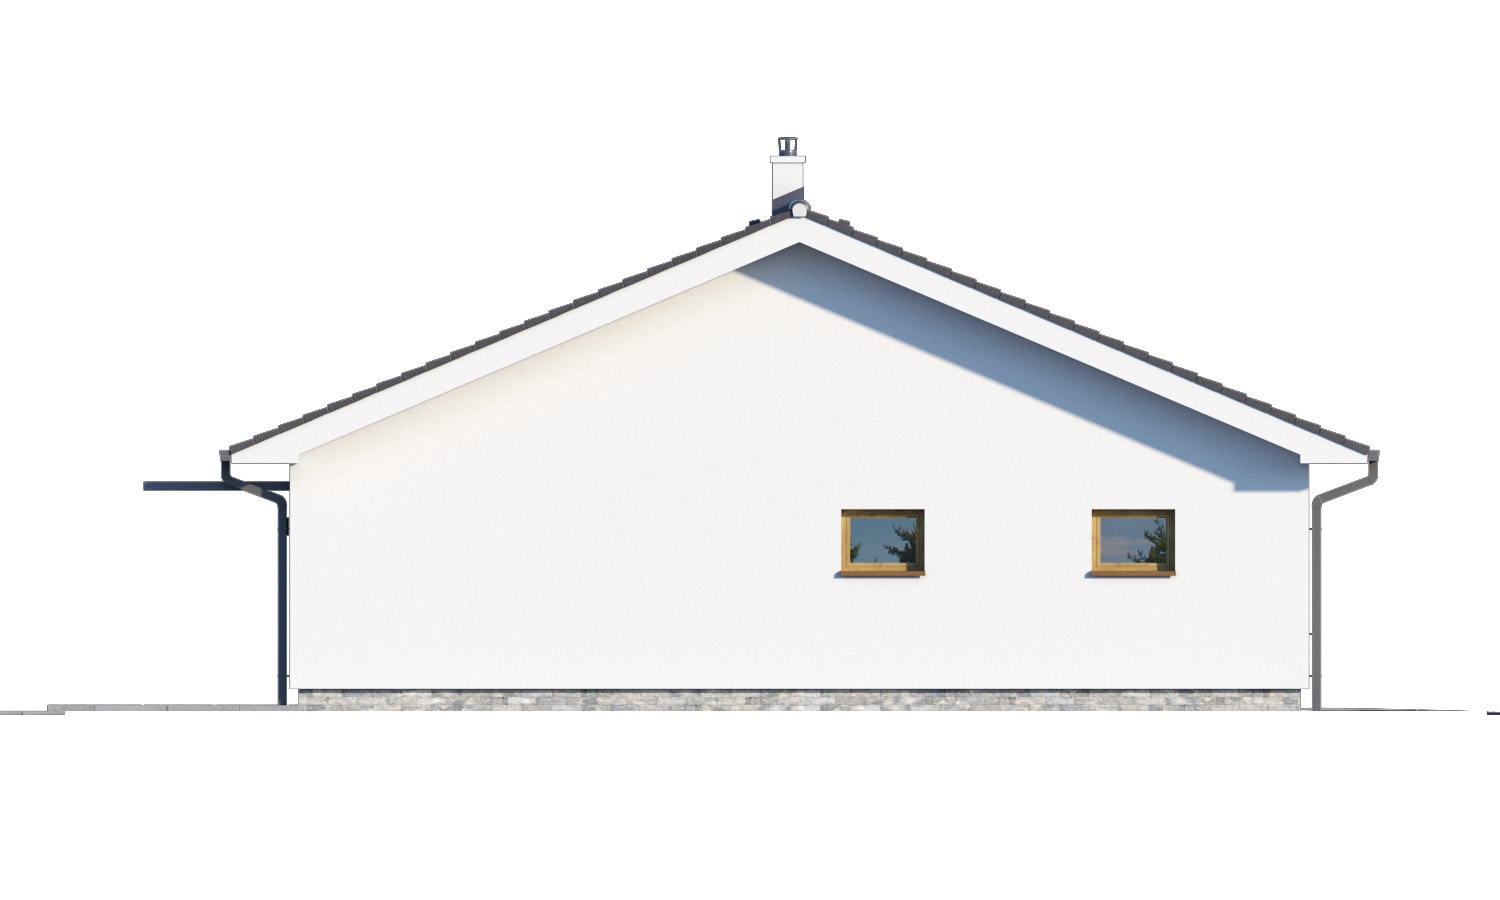 Zrkadlový pohľad 4. - Moderní bungalov s garáží ve tvaru U, sedlovou střechou a s pokoji orientovanými do zahrady.